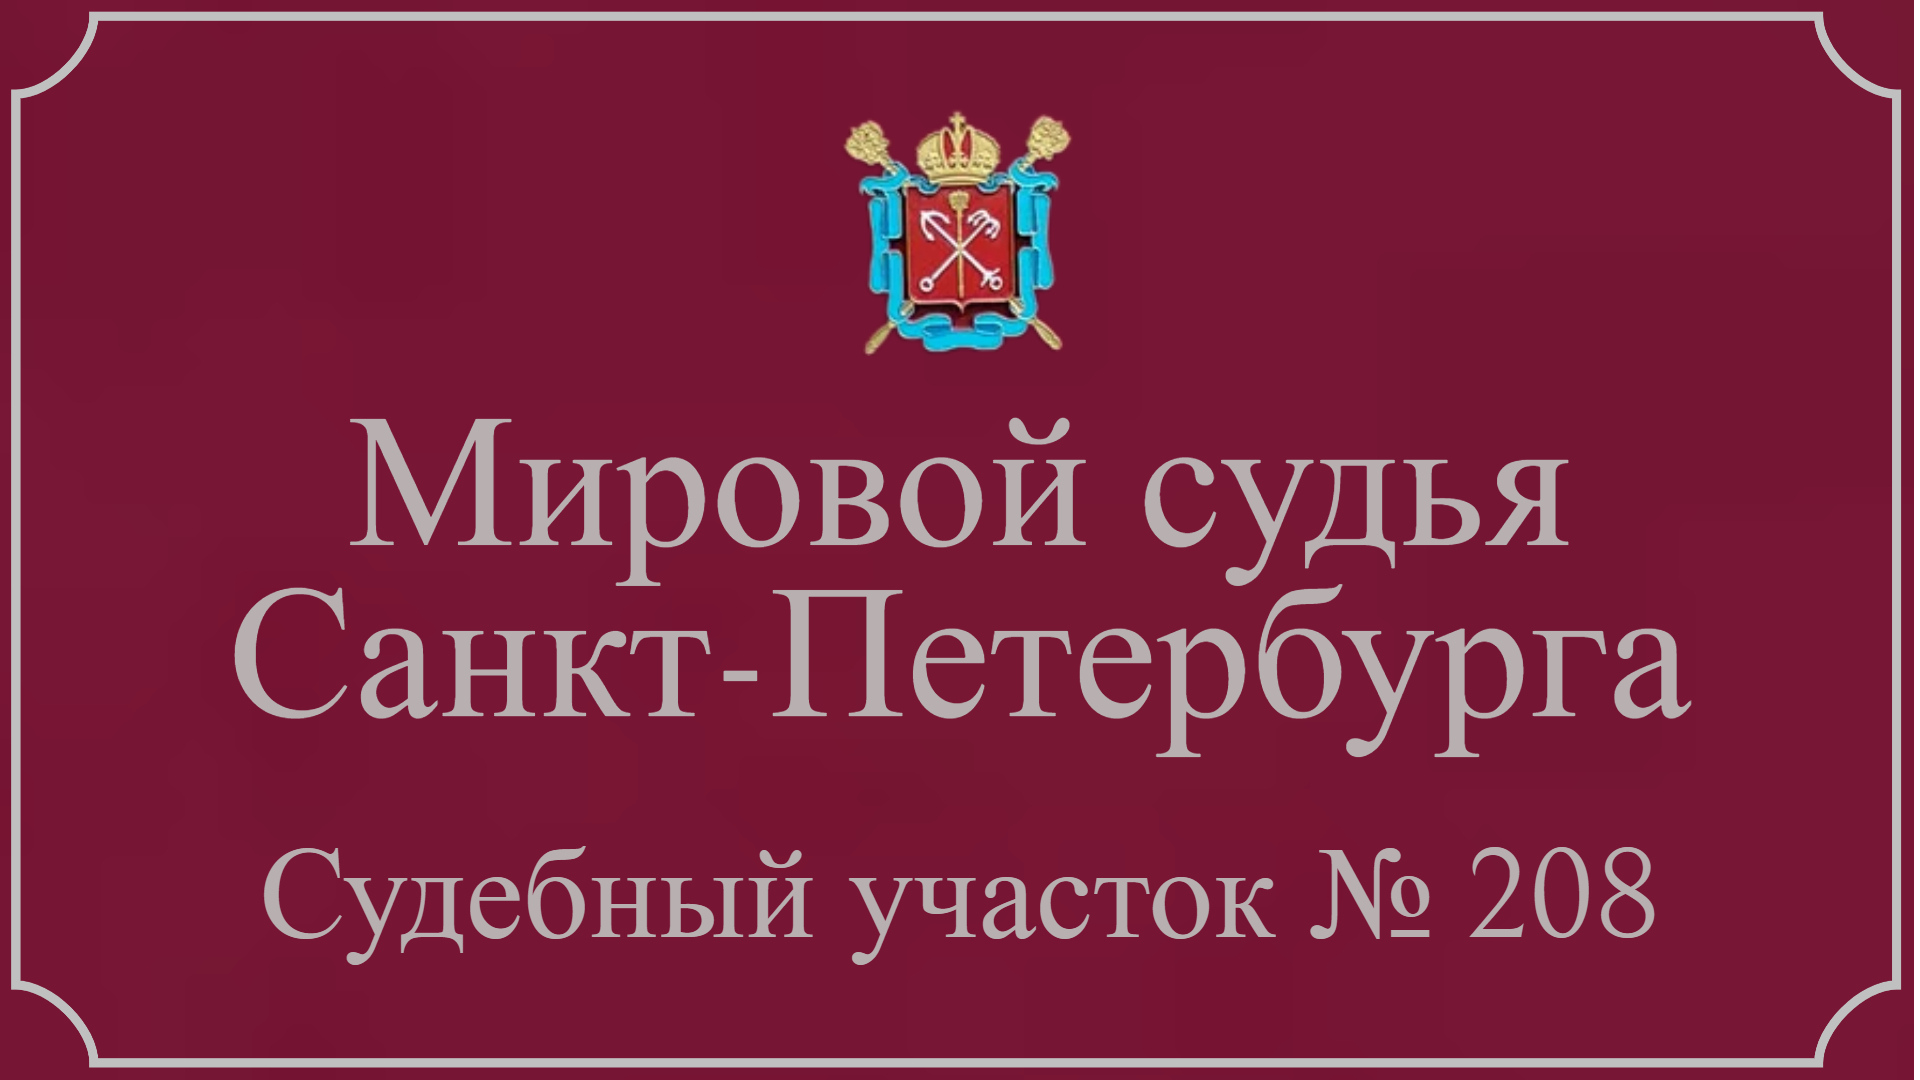 Информация по 208 судебному участку в Санкт-Петербурге.